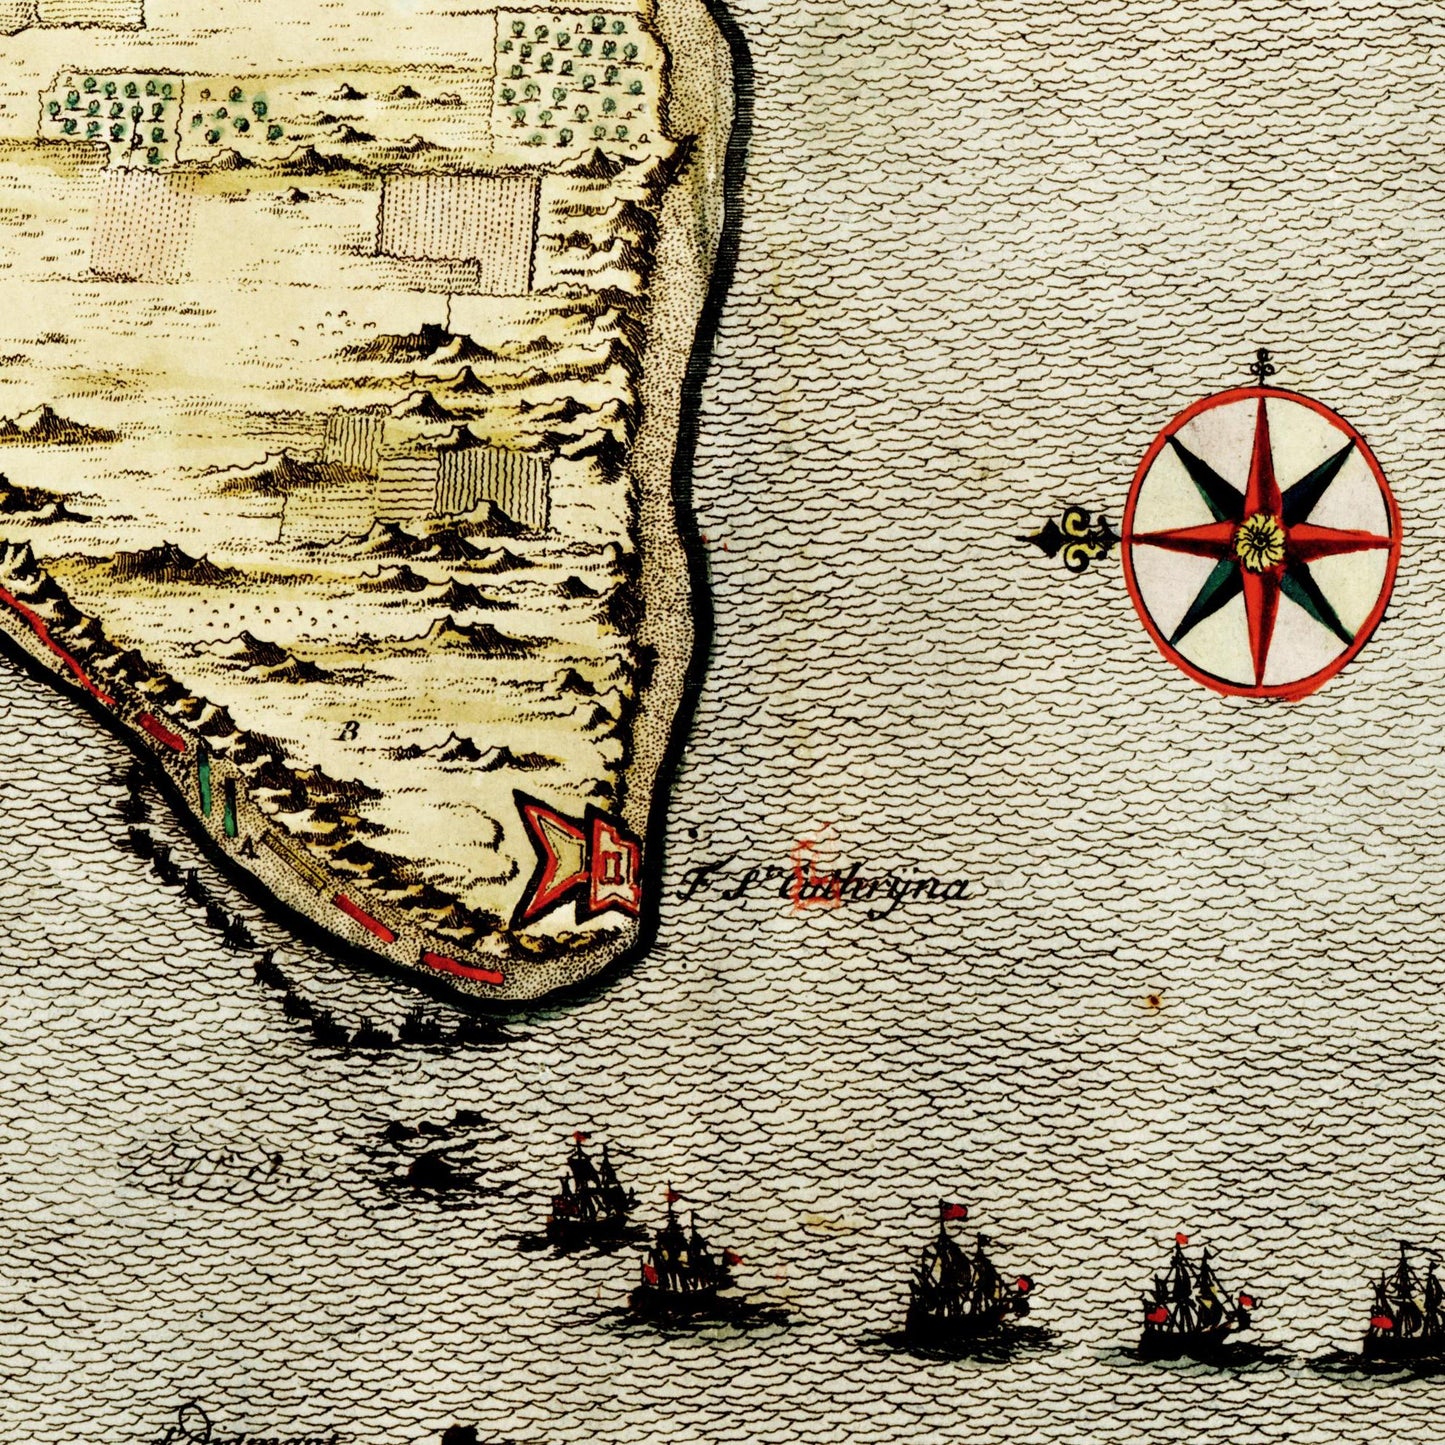 Historischer Stadtplan Cadiz um 1700